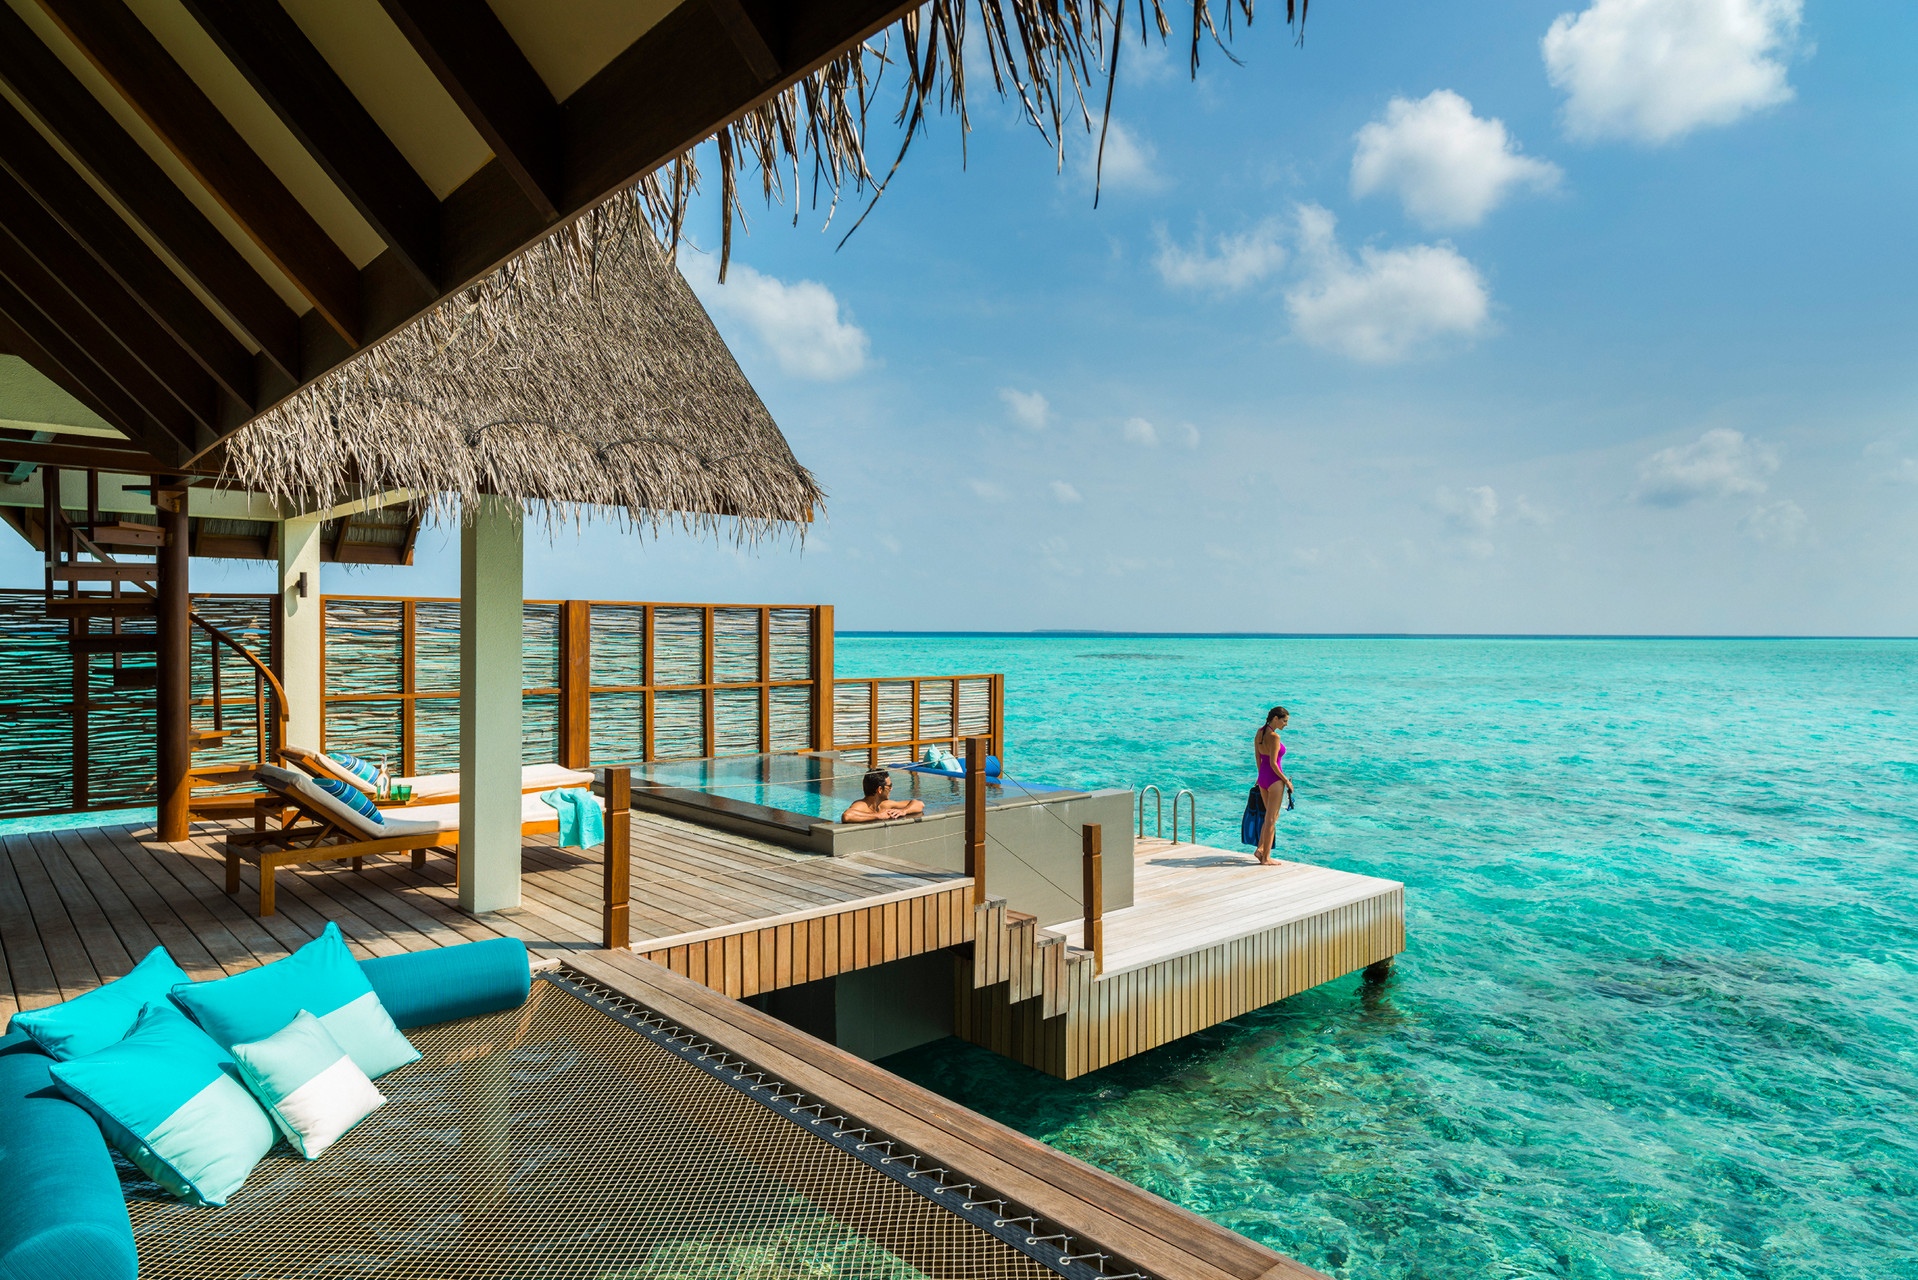 海洋国旅官网|马尔代夫岛屿排名|马尔代夫选岛攻略|马尔代夫双人游报价|深圳海洋国旅